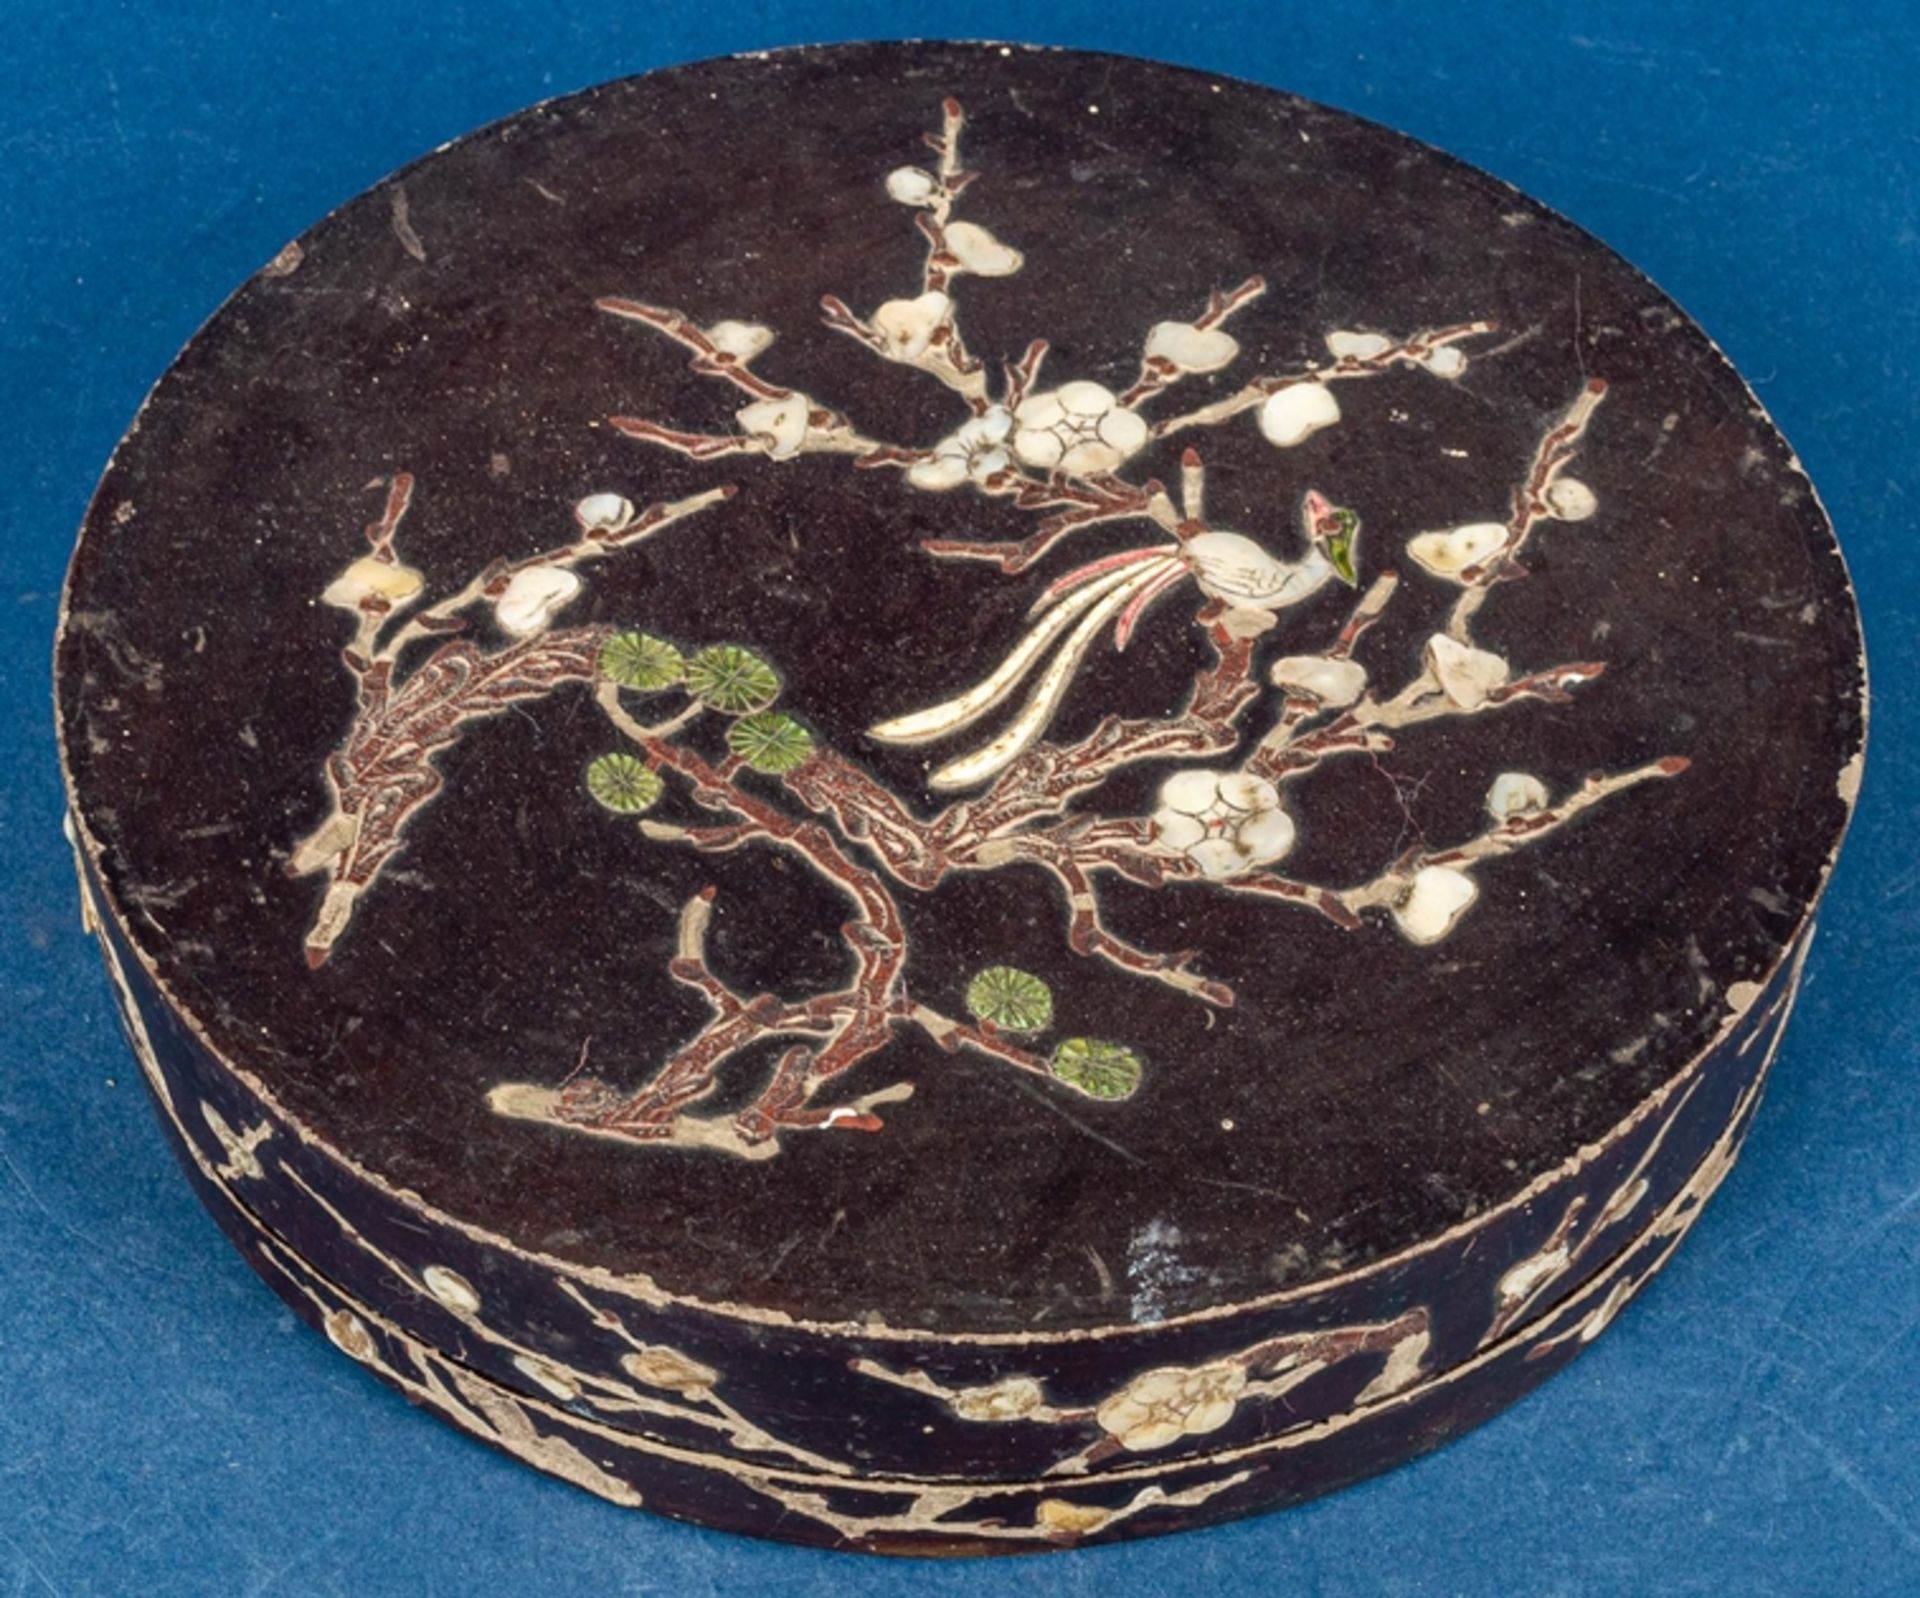 Rundes Vorspeisenset in schwarzem Lackkasten, China Qing - Dynastie, Anfang 20. Jhdt., Durchmesser 